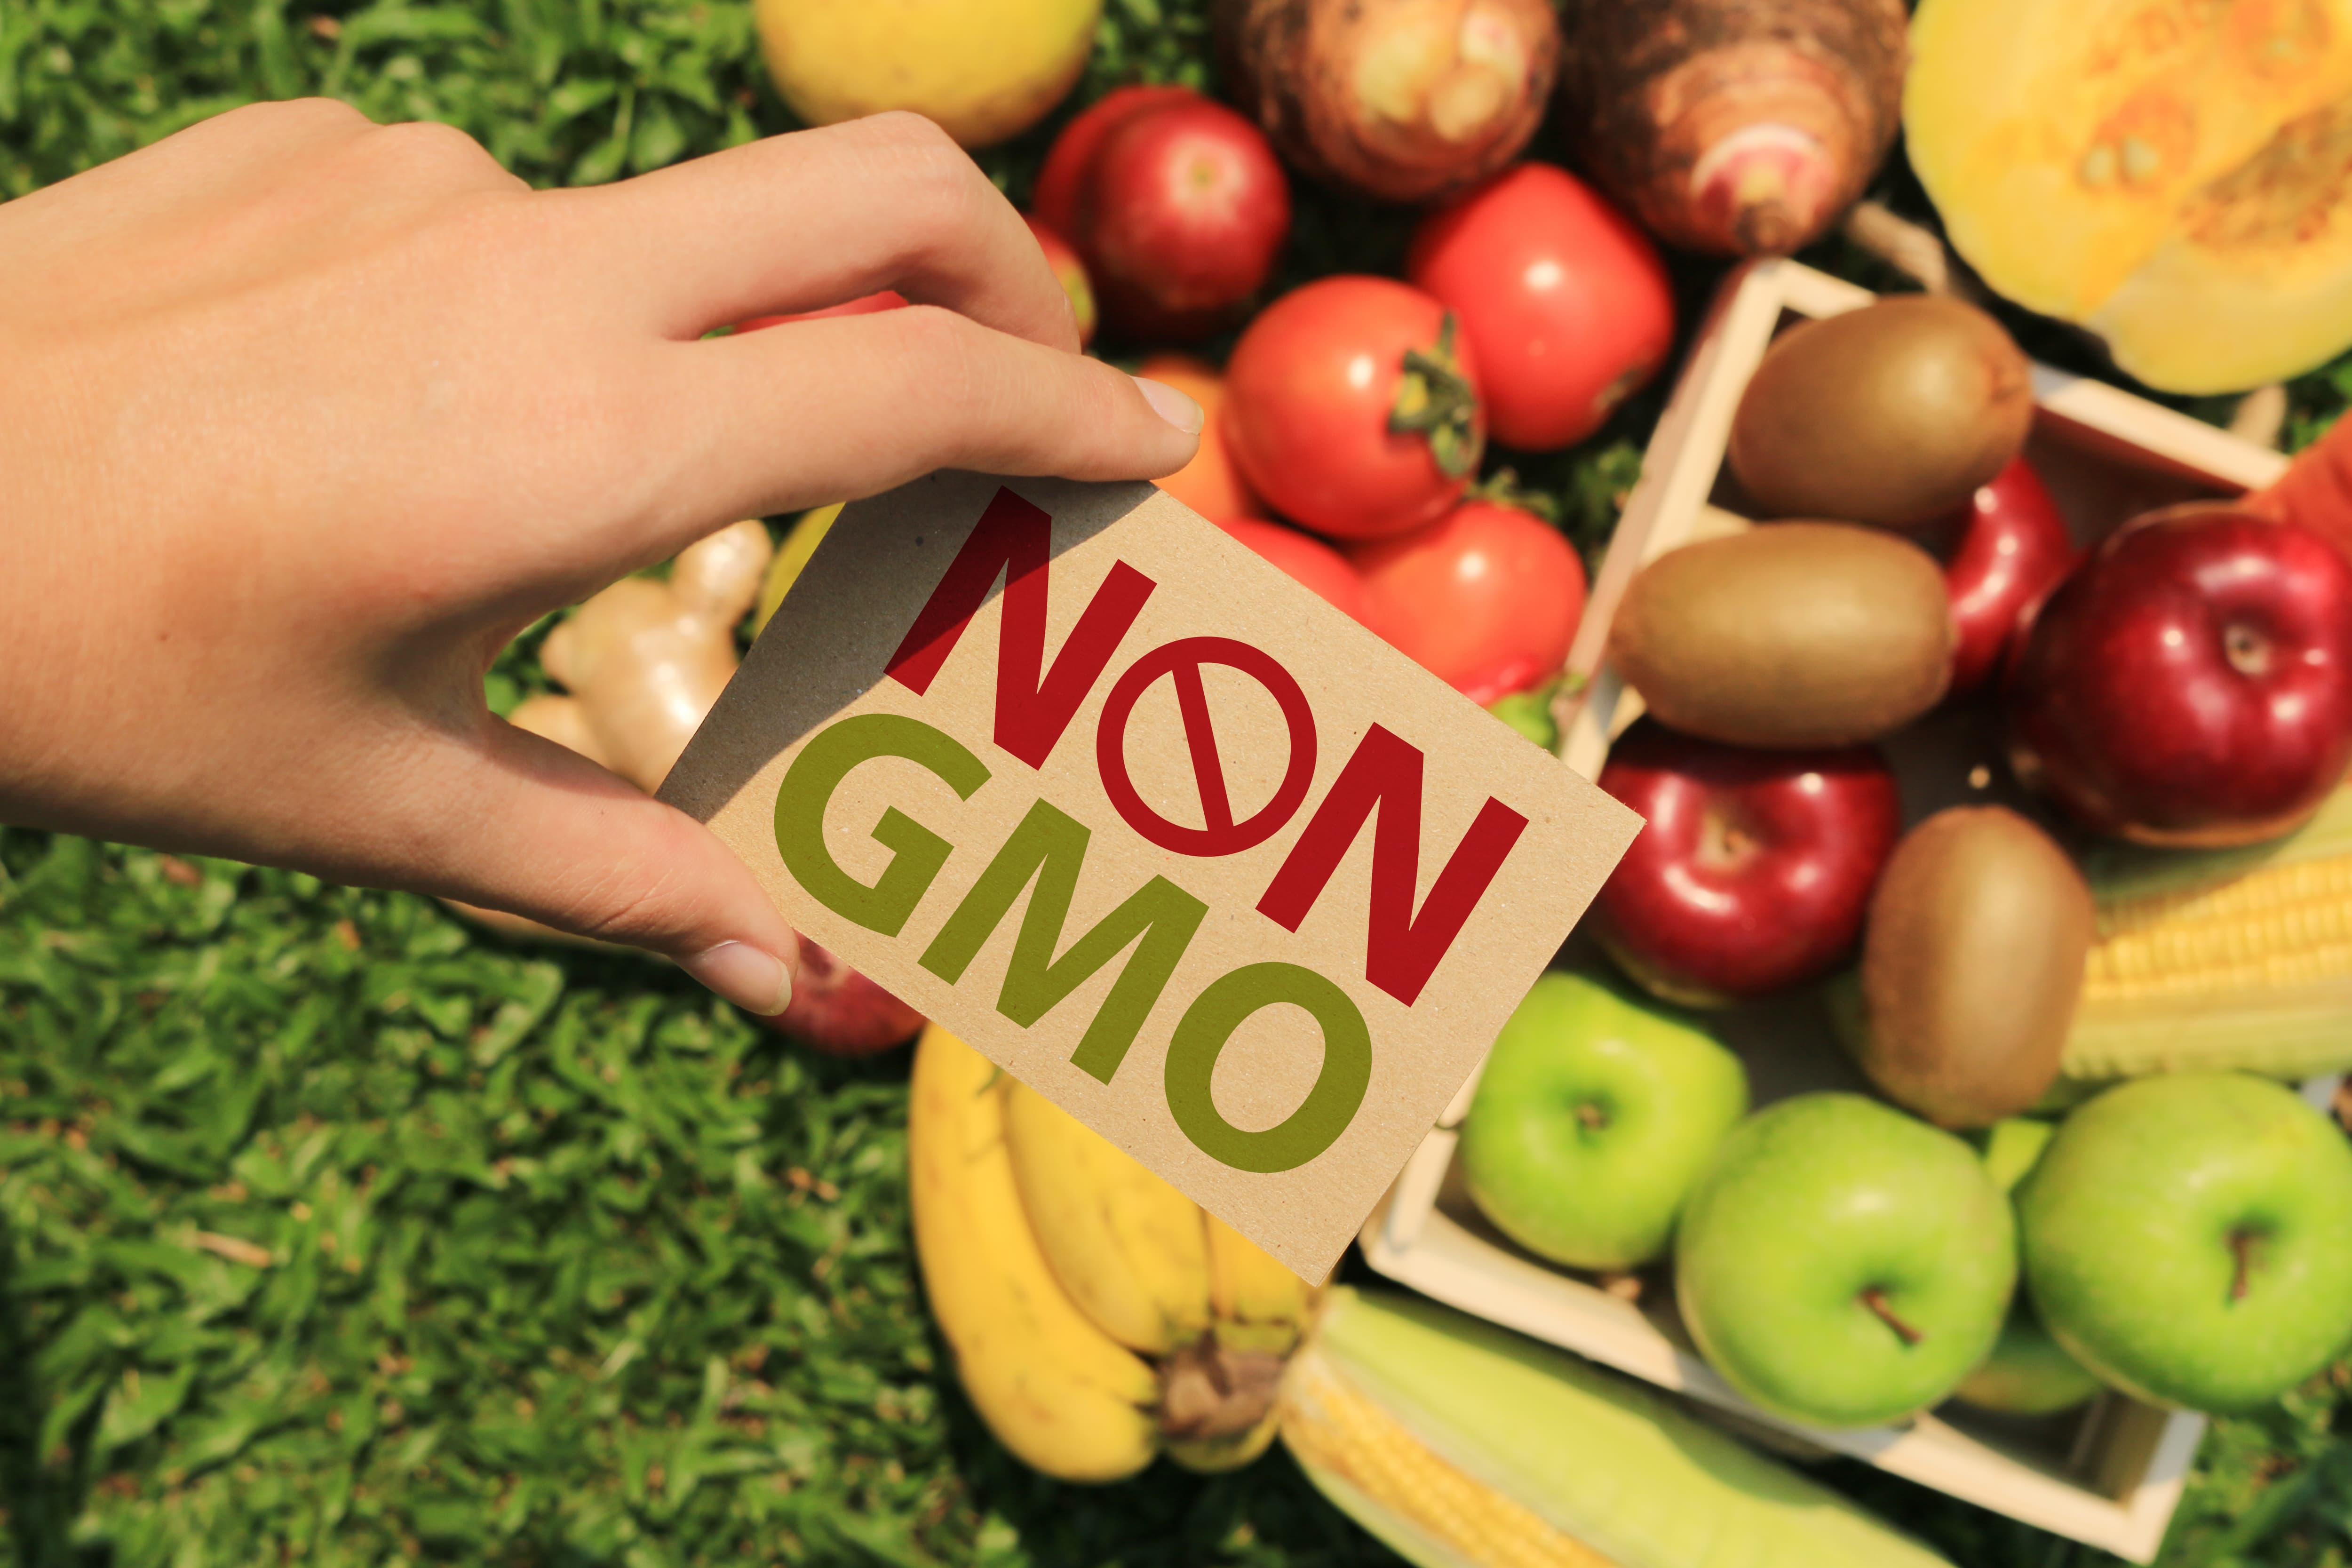 Non-GMO crops